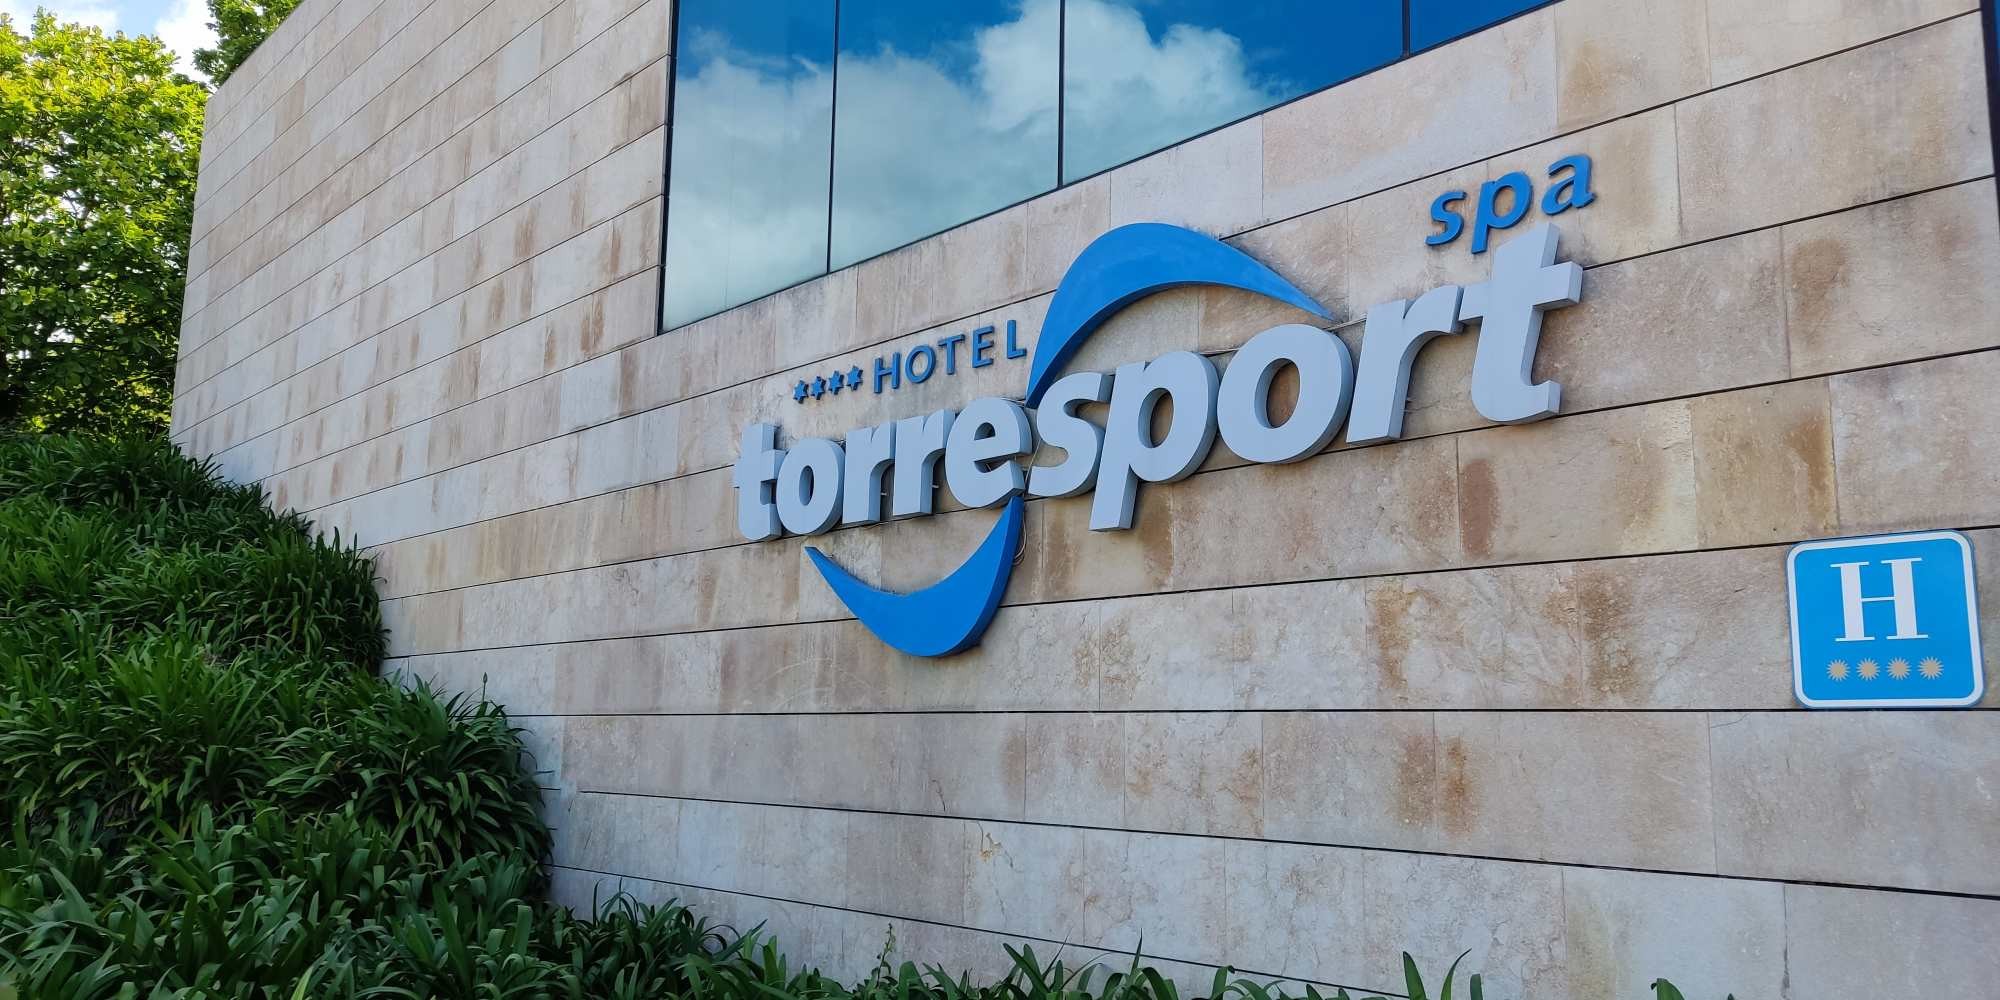 Torresport Spa Hotel